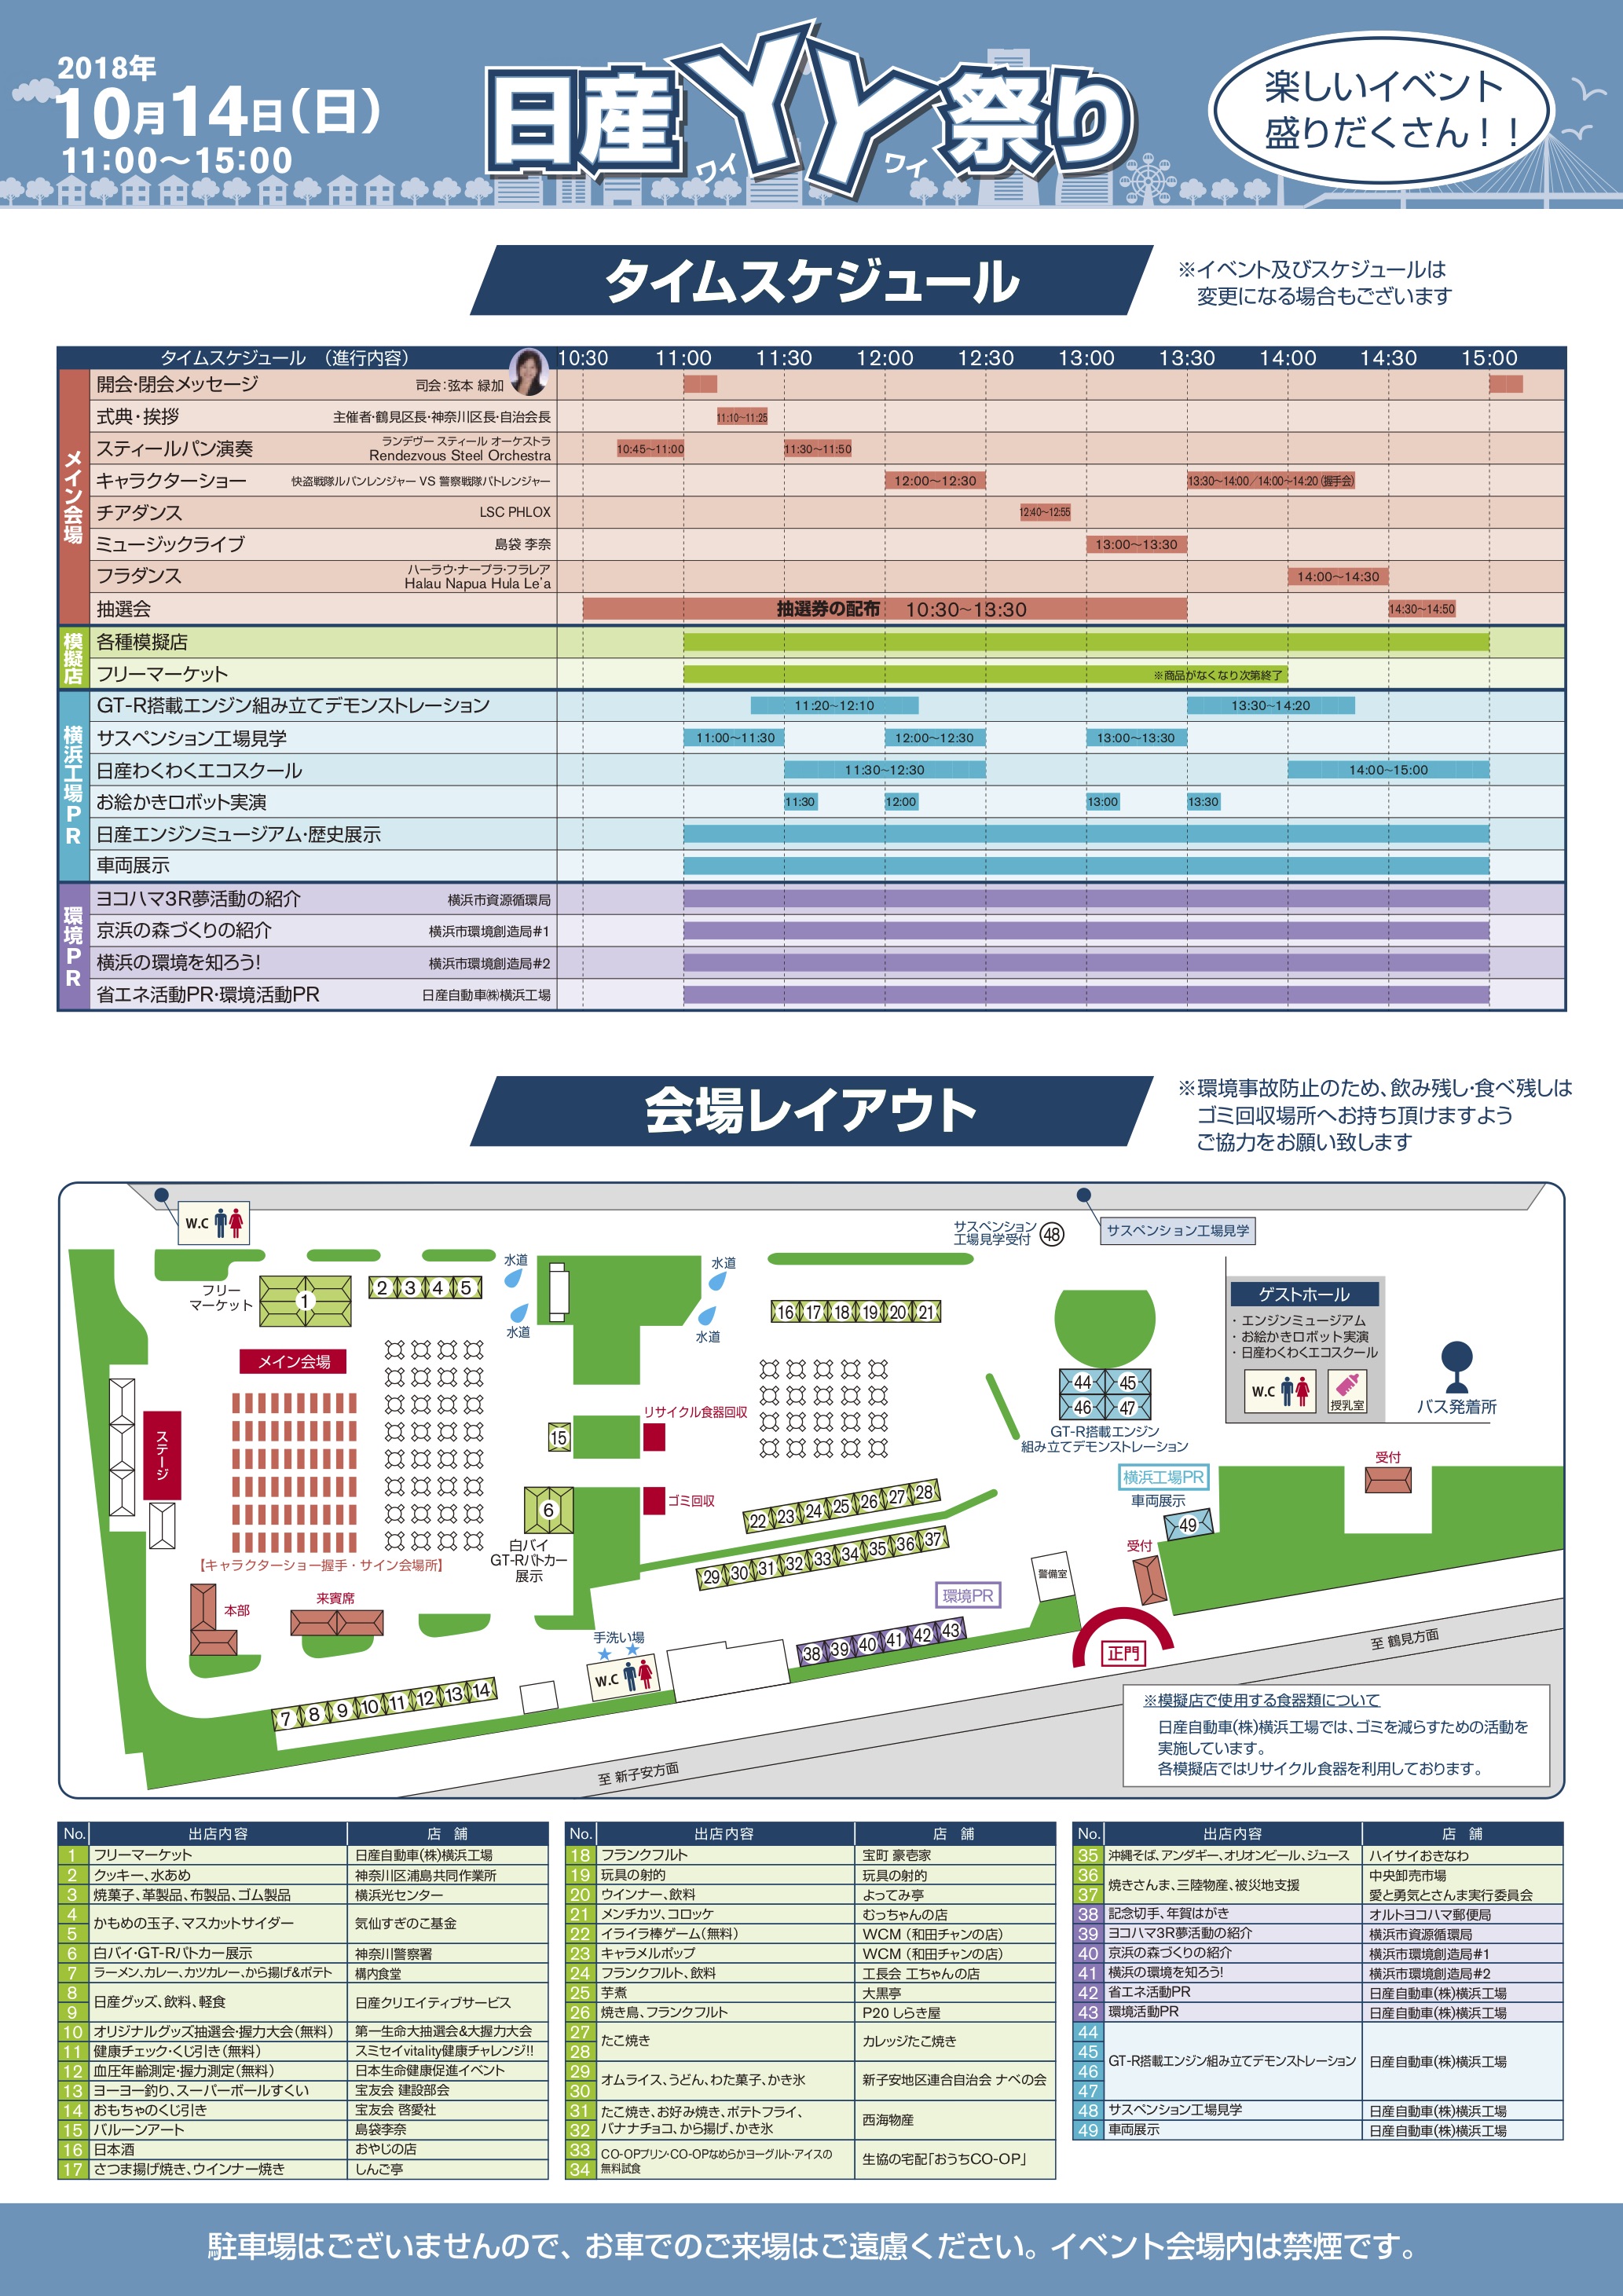 関東地域 イベント情報 10月14日 日 日産自動車横浜工場にて 日産yy祭り を開催いたします Newscast